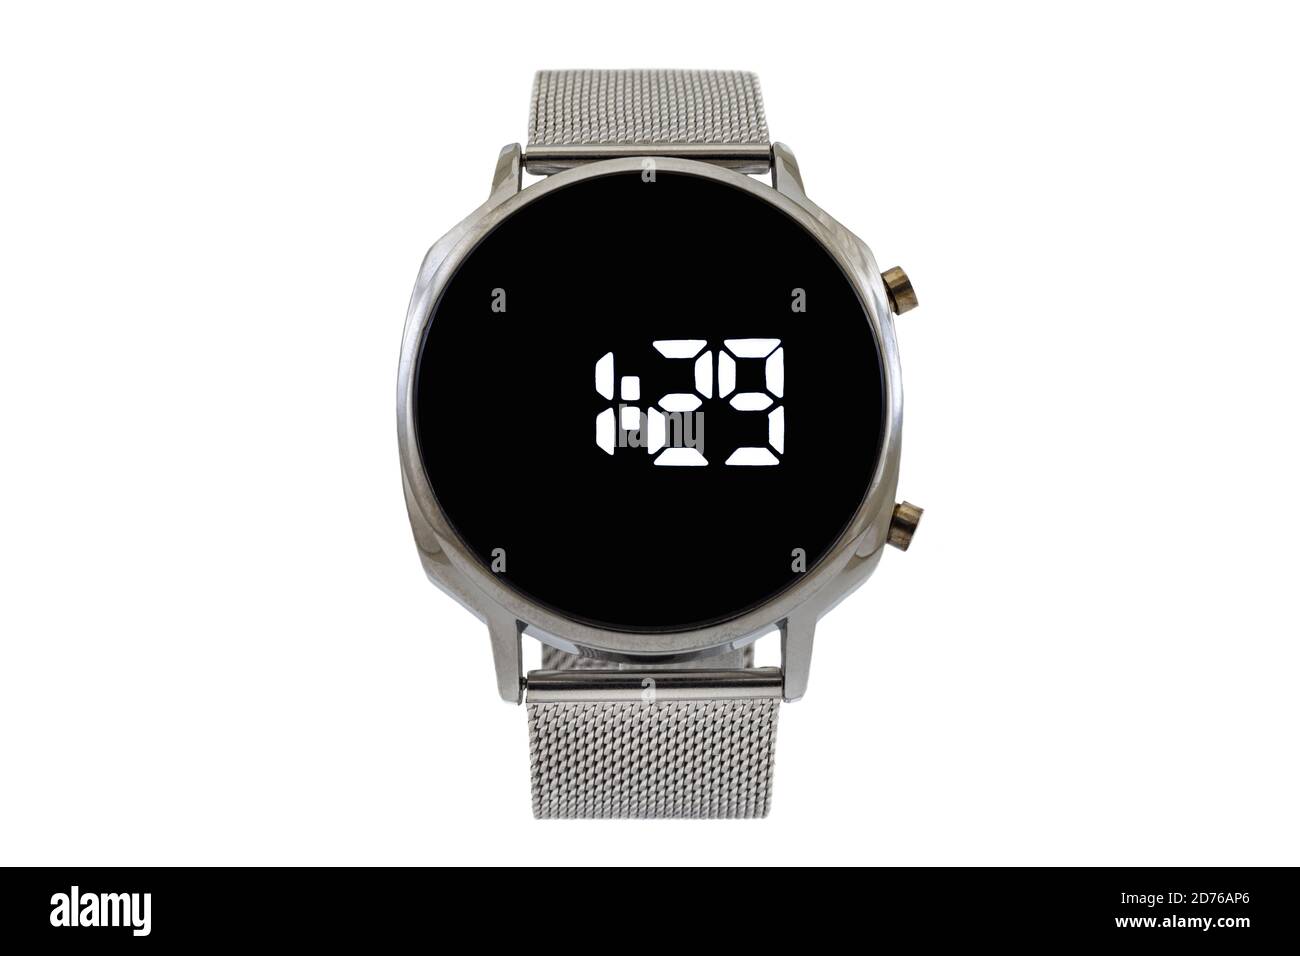 Smartwatch argento con cinturino in mesh, quadrante nero e numeri digitali, isolato su sfondo bianco. Foto Stock